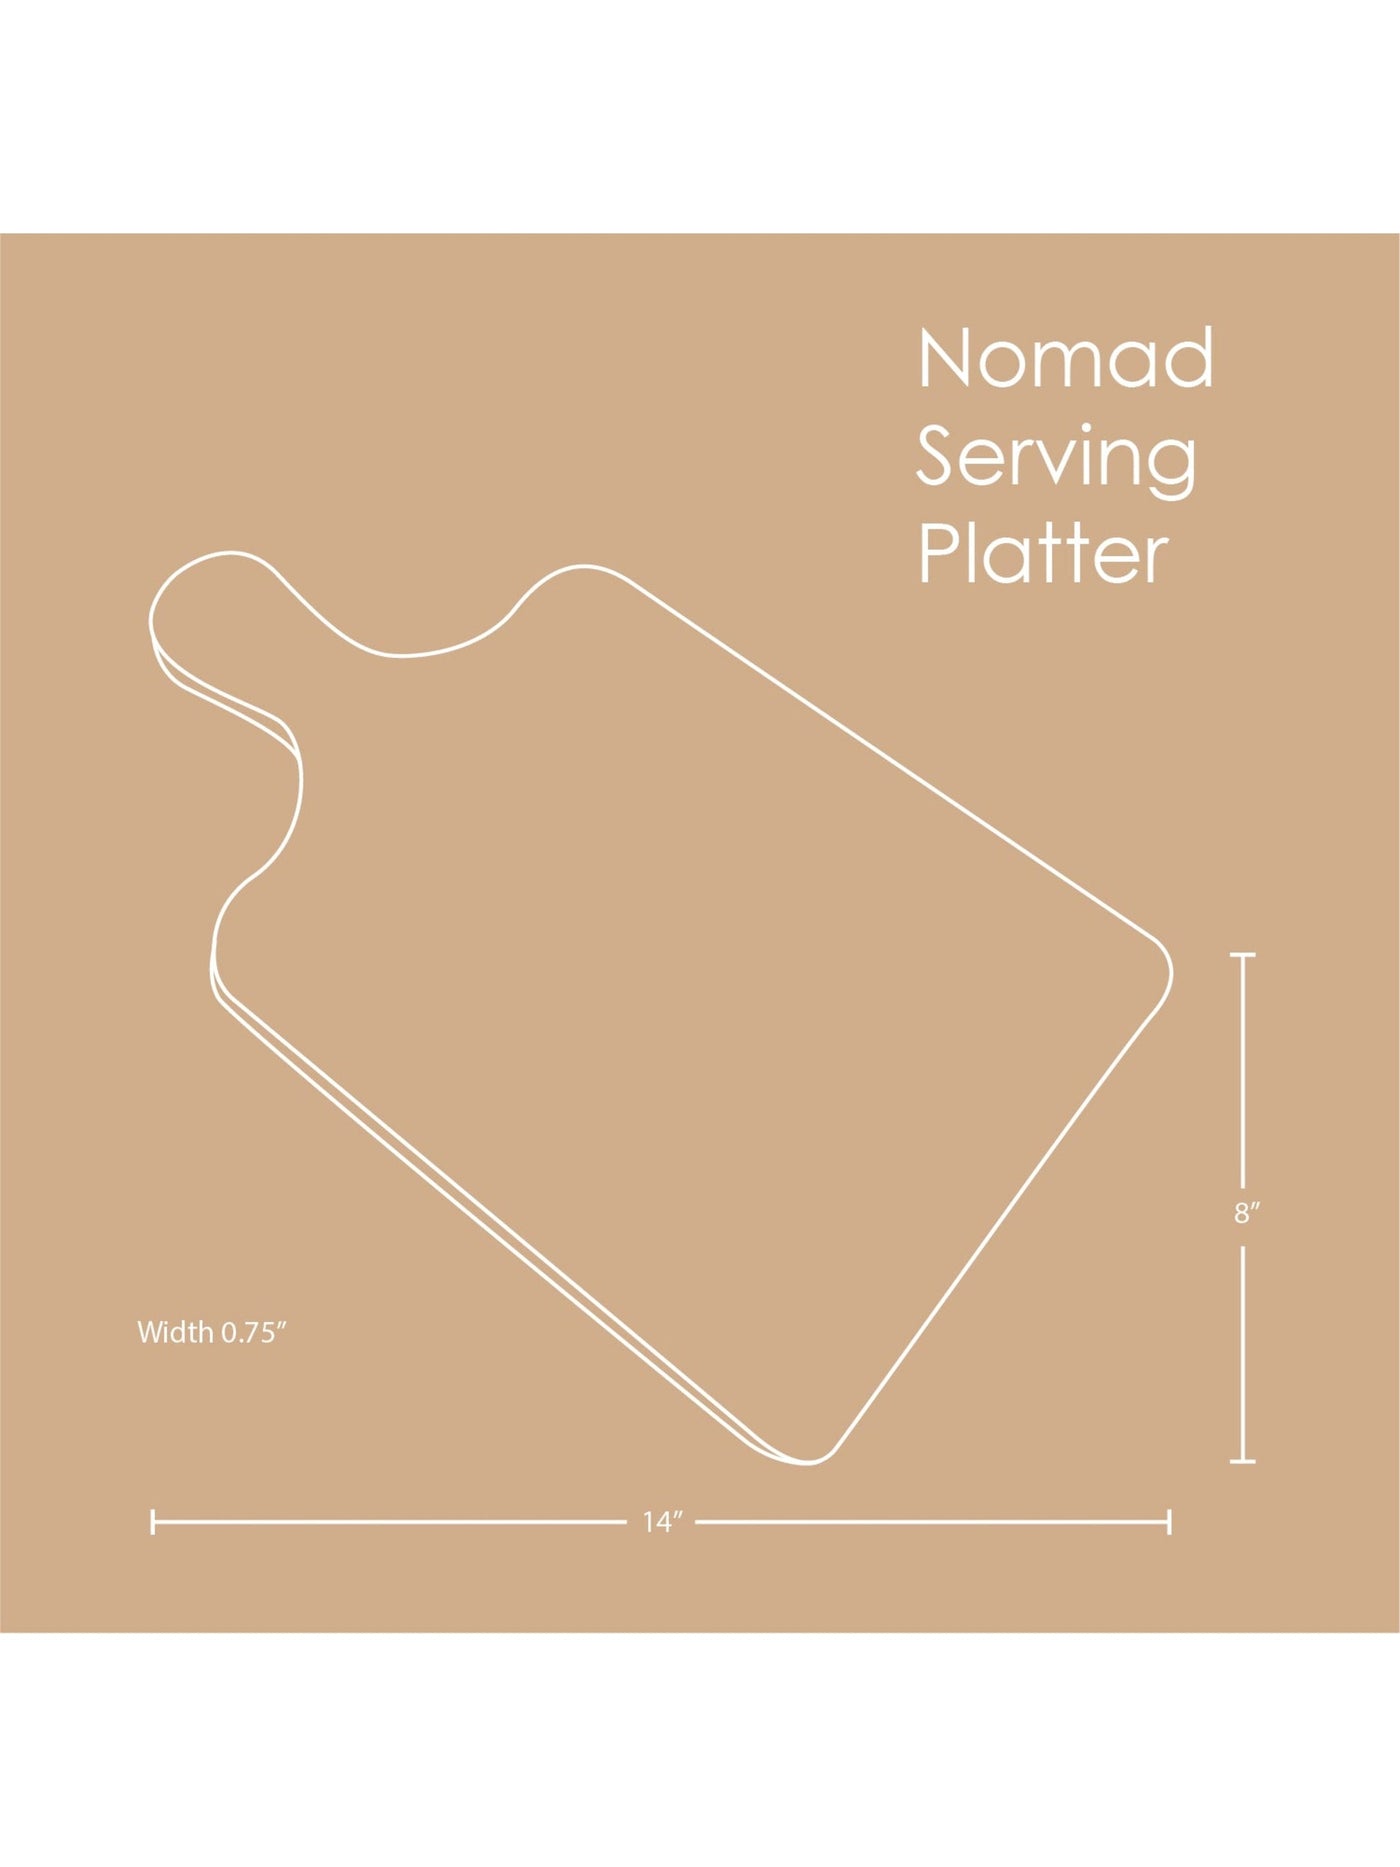 Nomad Serving Platter